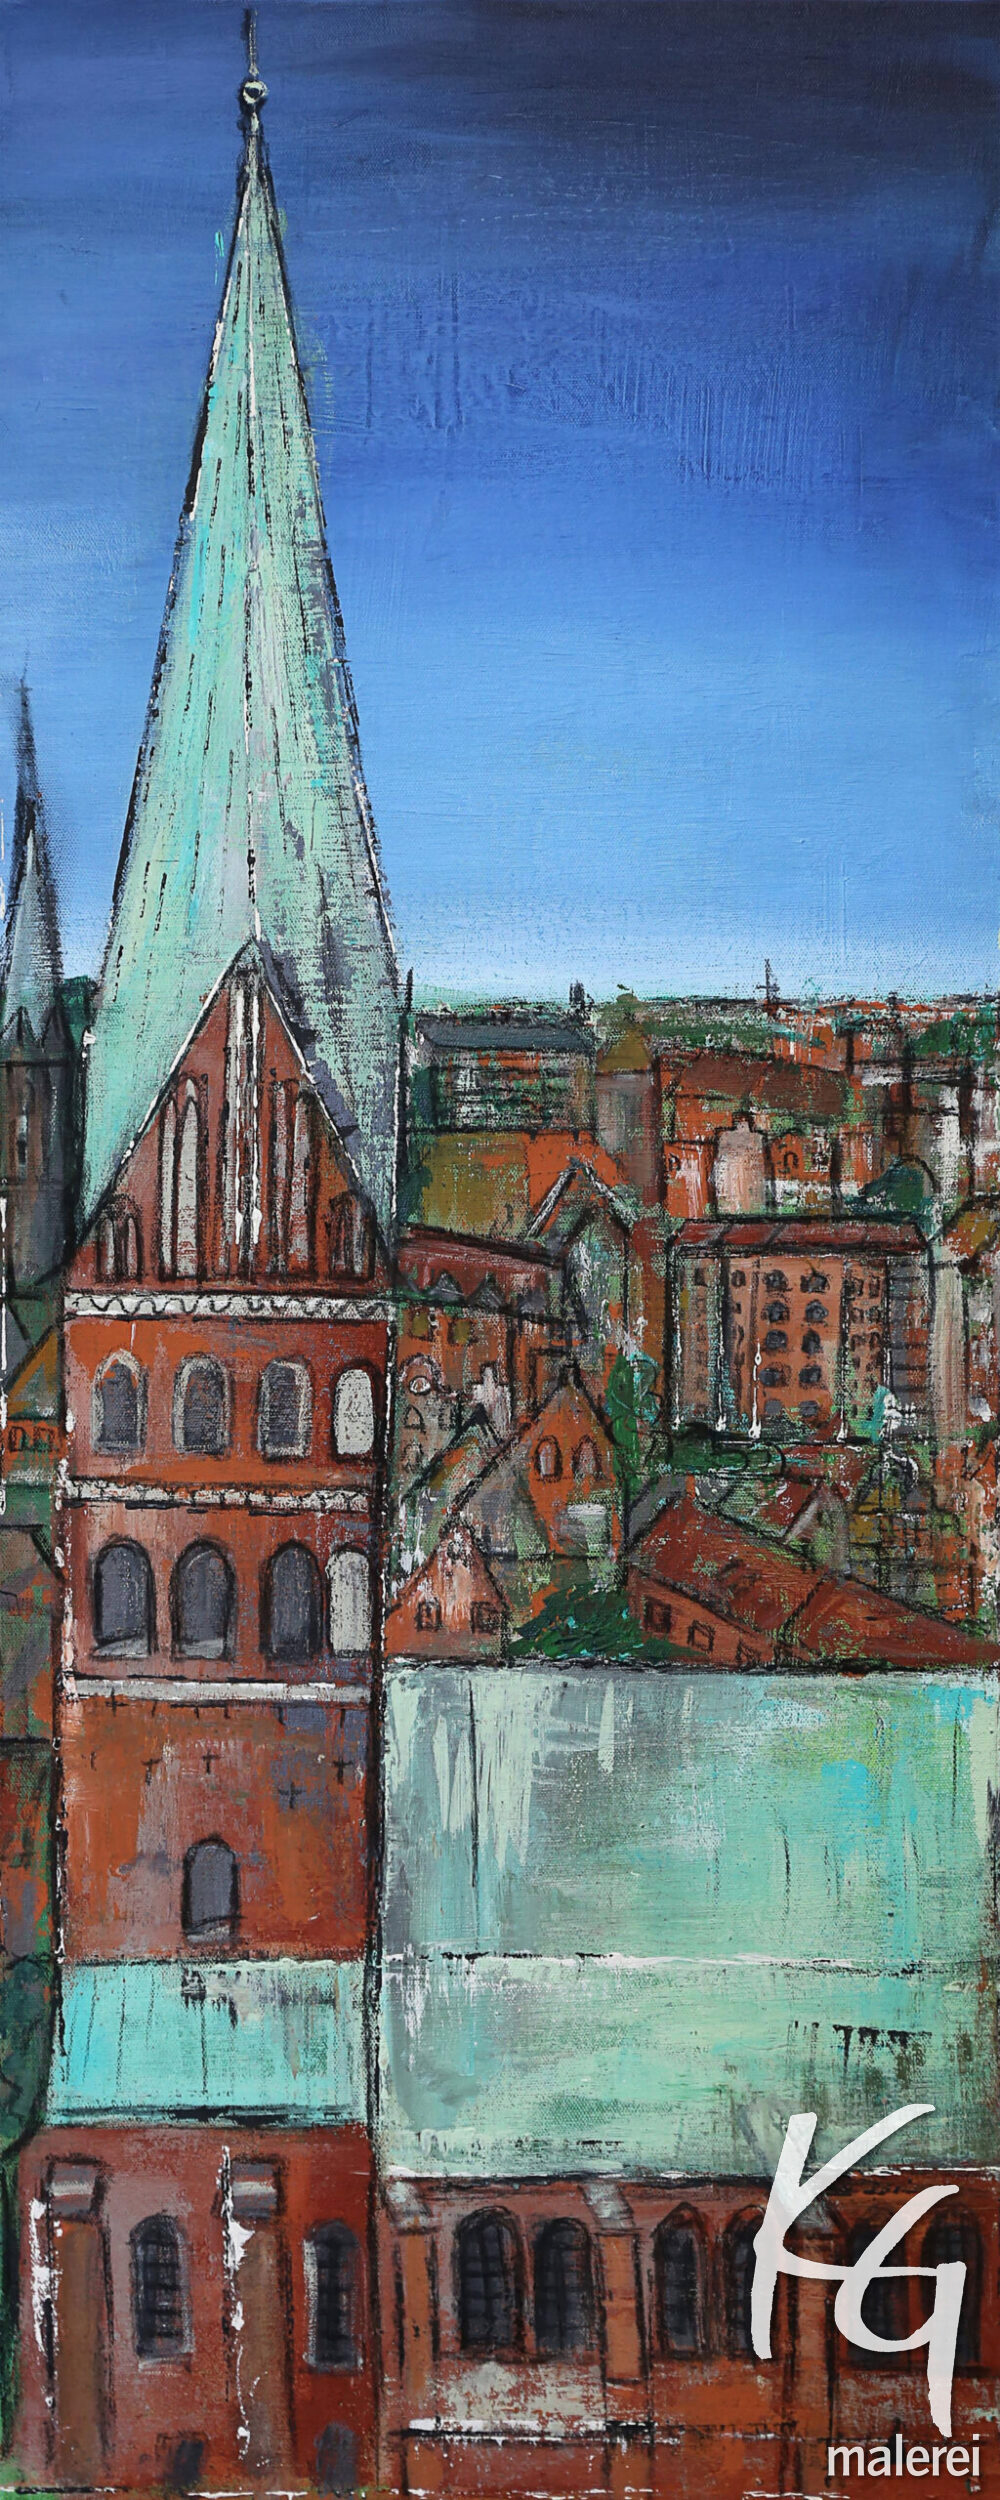 Das Gemälde St. Johanniskirche Lüneburg zeigt Die Johanniskirche Lüneburg in natürlichen Farben vor blauem Himmel. Die Backsteingiebel der Häuser im Hintergrund sind typisch für die Hansestadt Lüneburg.